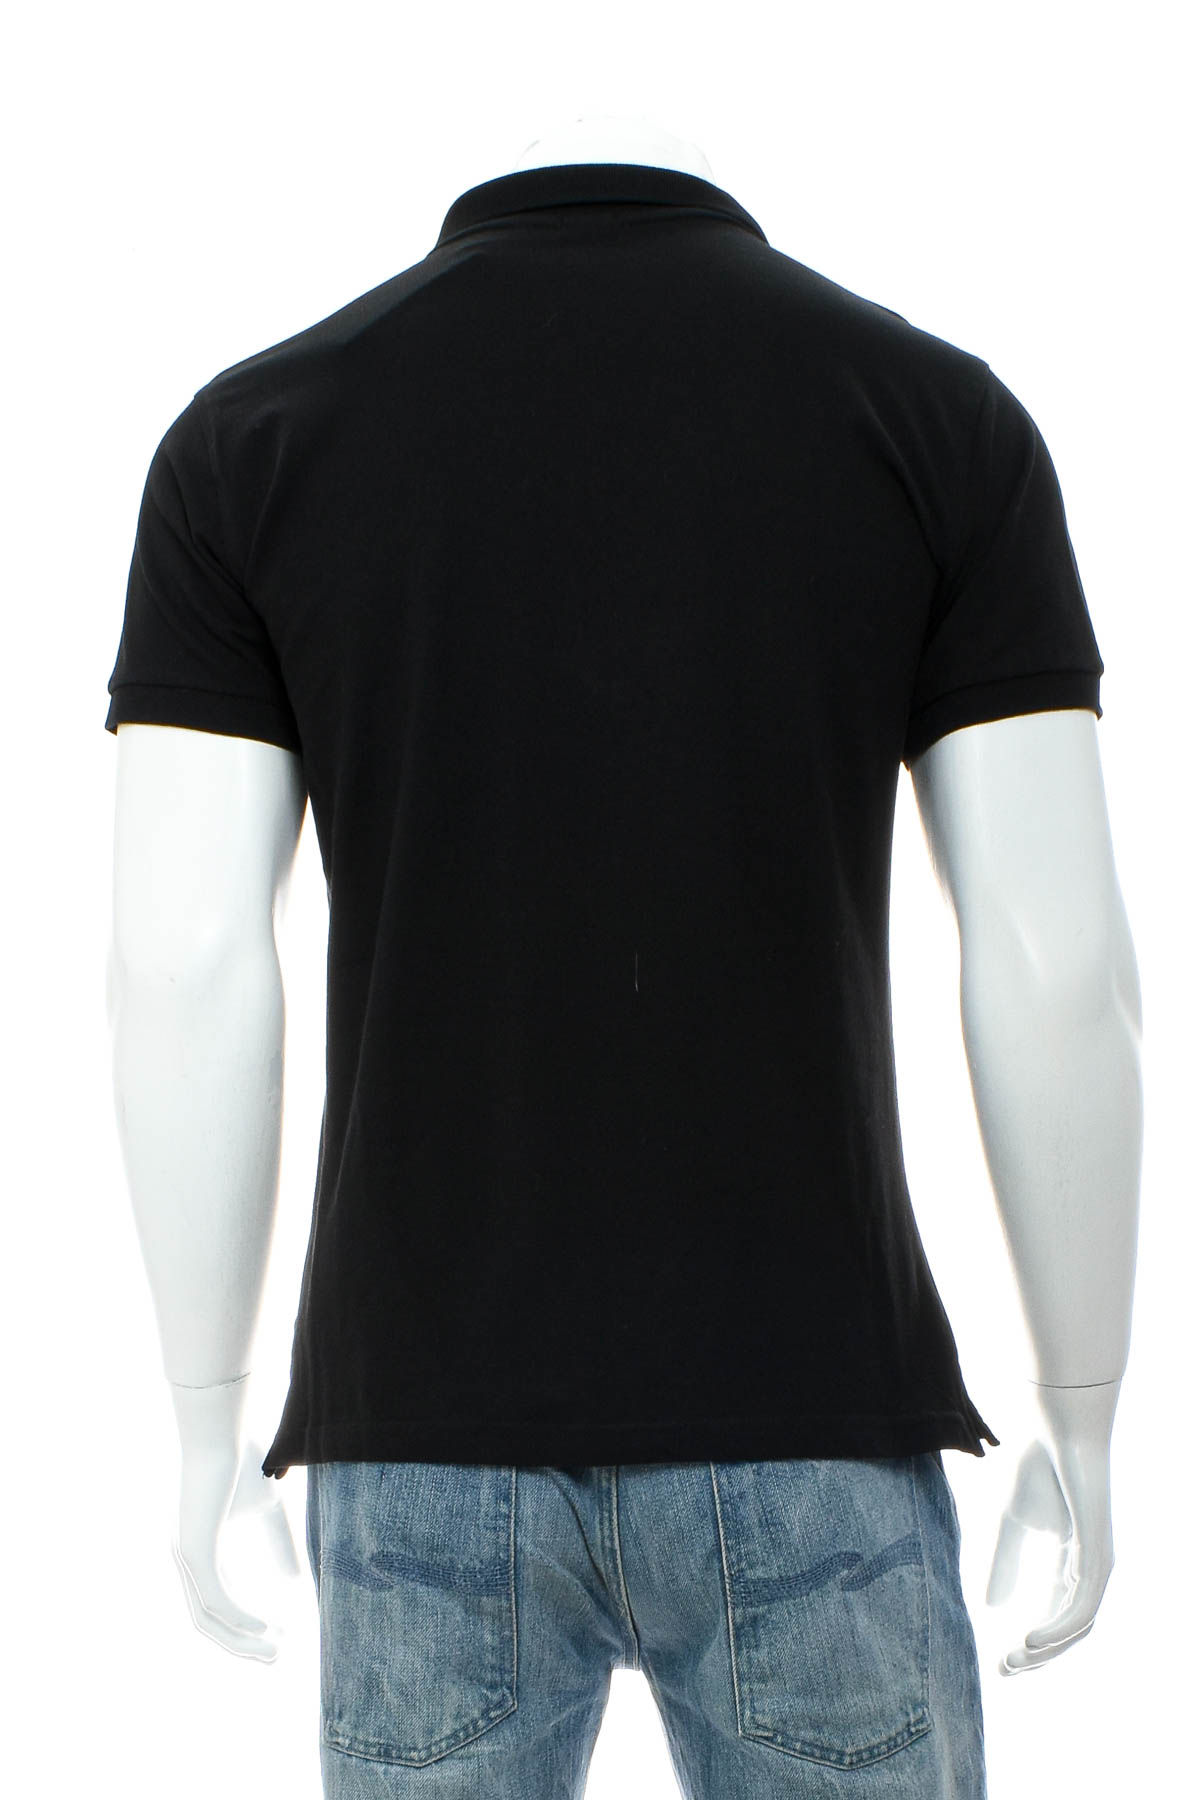 Men's T-shirt - Russell - 1